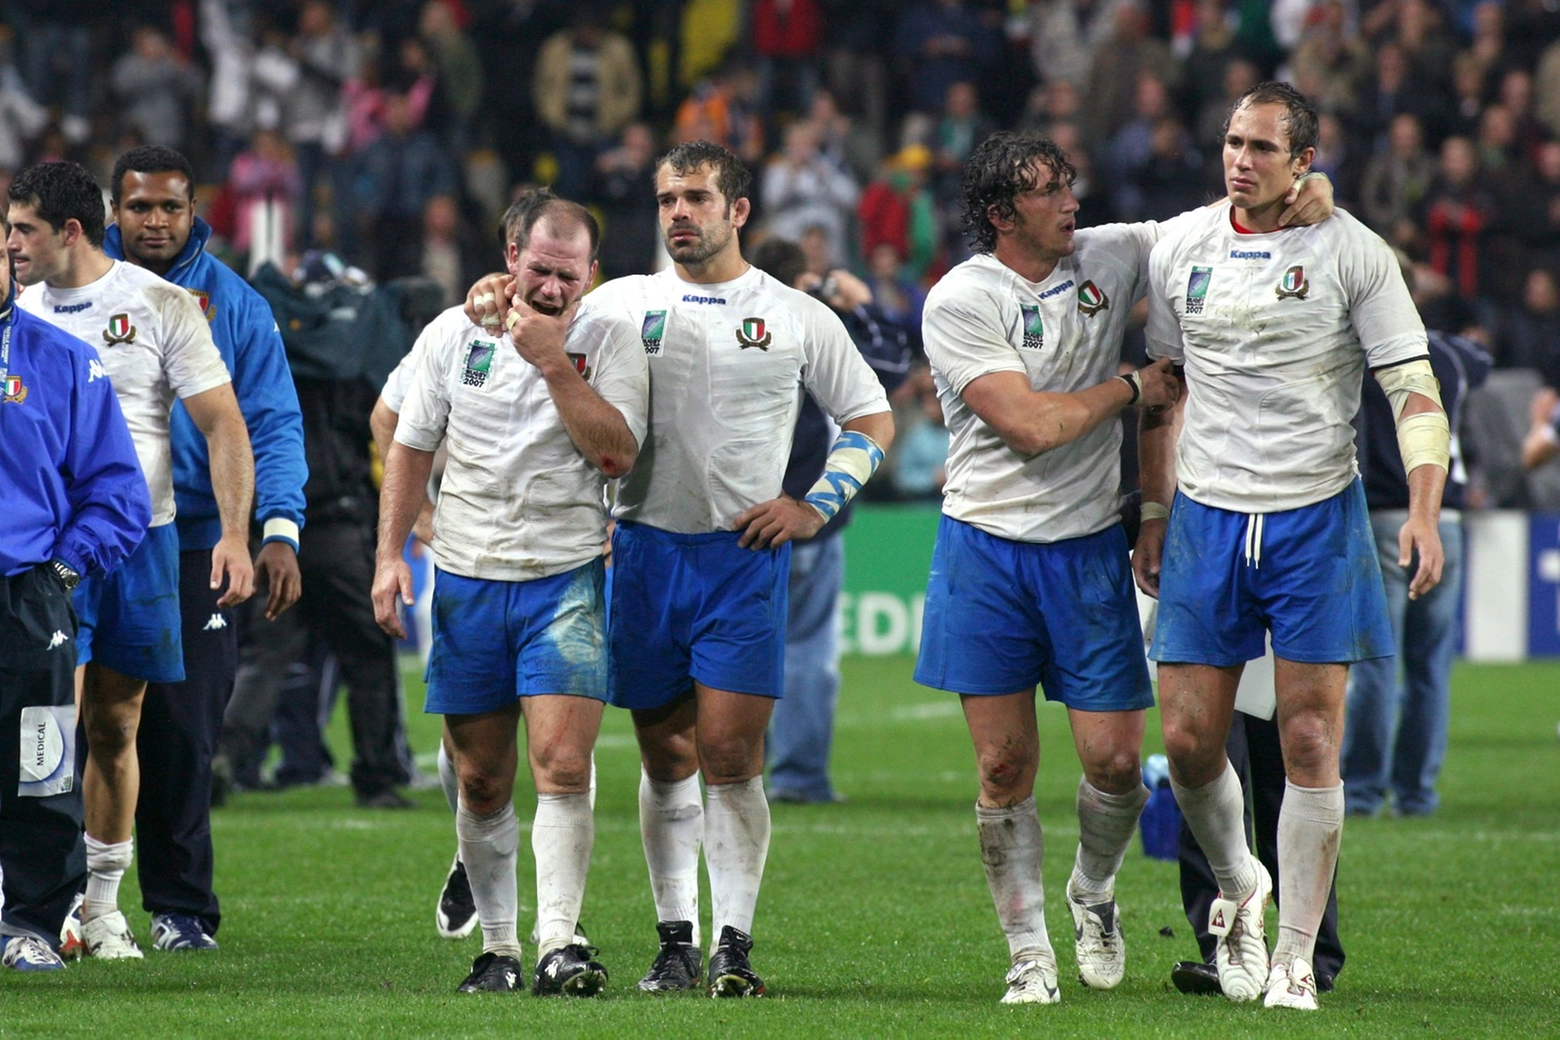 La grande delusione azzurra dopo sconfitta con la Scozia nella RWC 2007 a Saint Etienne. Nella foto Troncon, Ongaro, Mauro Bergamasco e Parisse (Diego Forti)